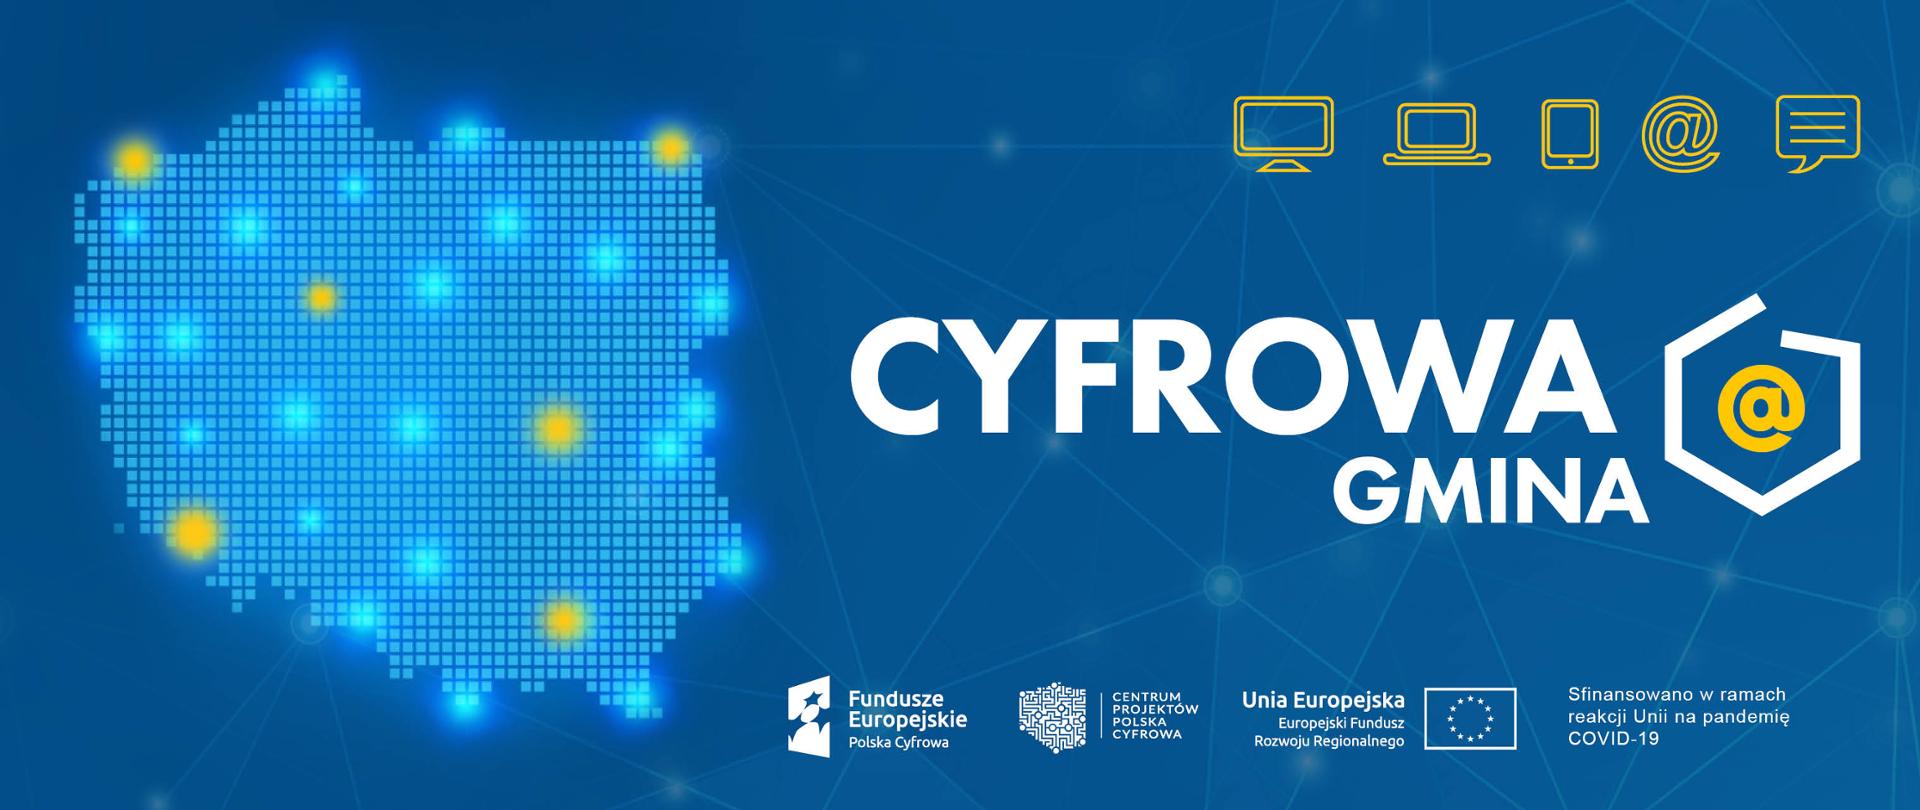 Grafika promująca projekt Cyfrowa Gmina - granatowe tło, na nim szkoc Polski i loga Funduszy europejskich